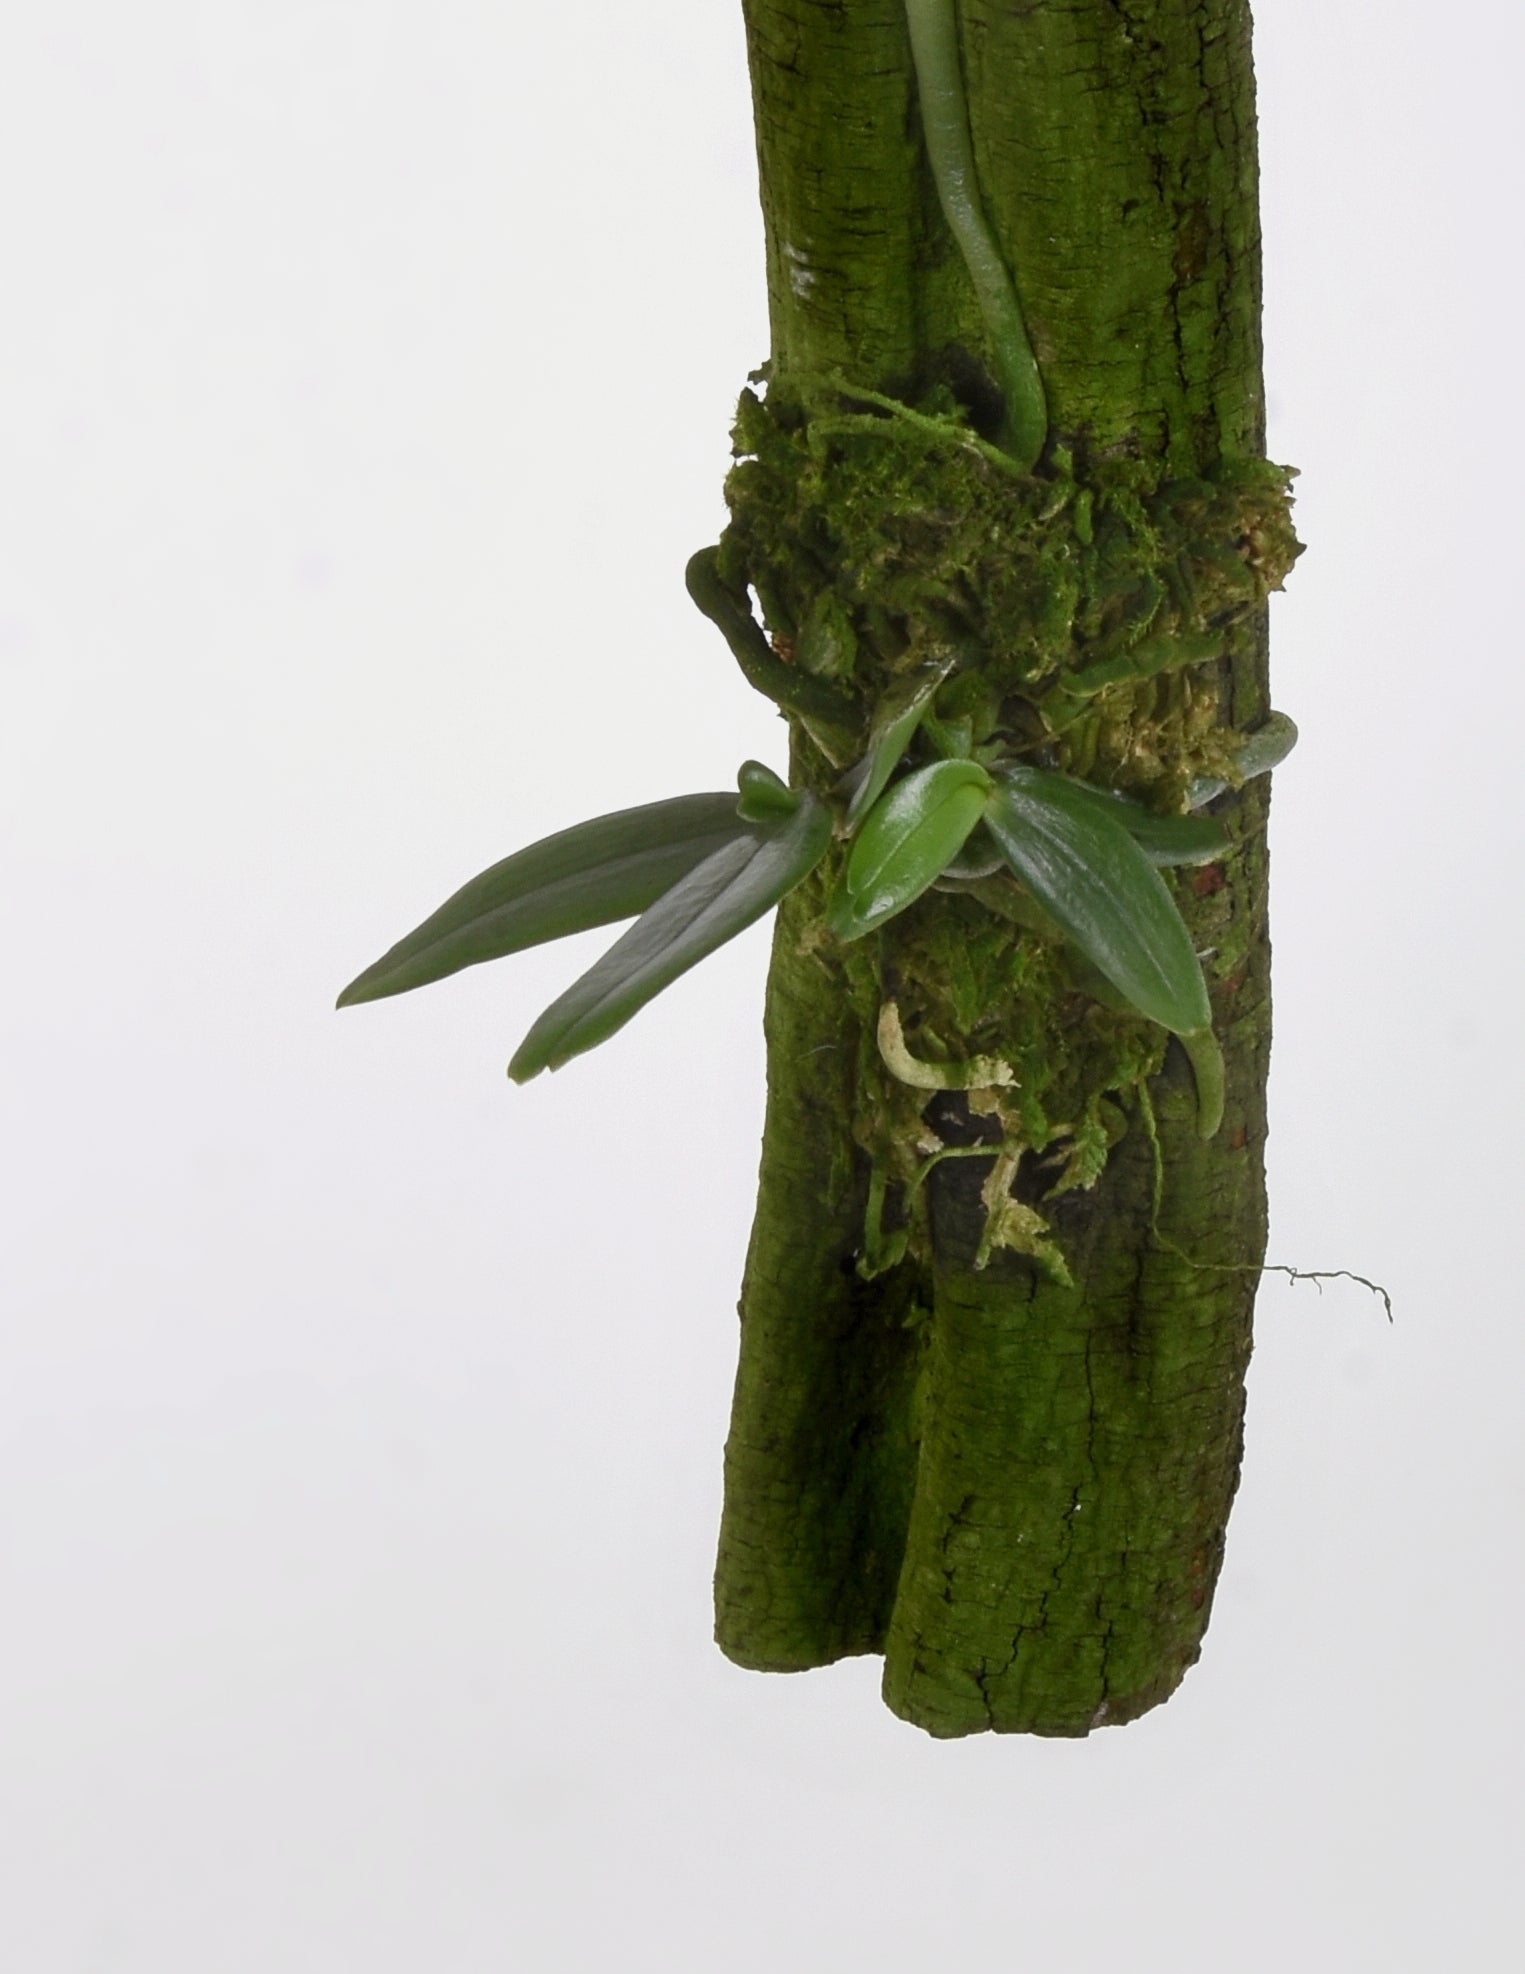 Aerangis luteoalba var. rhodosticta - Dotted Fan Orchid – Pistils